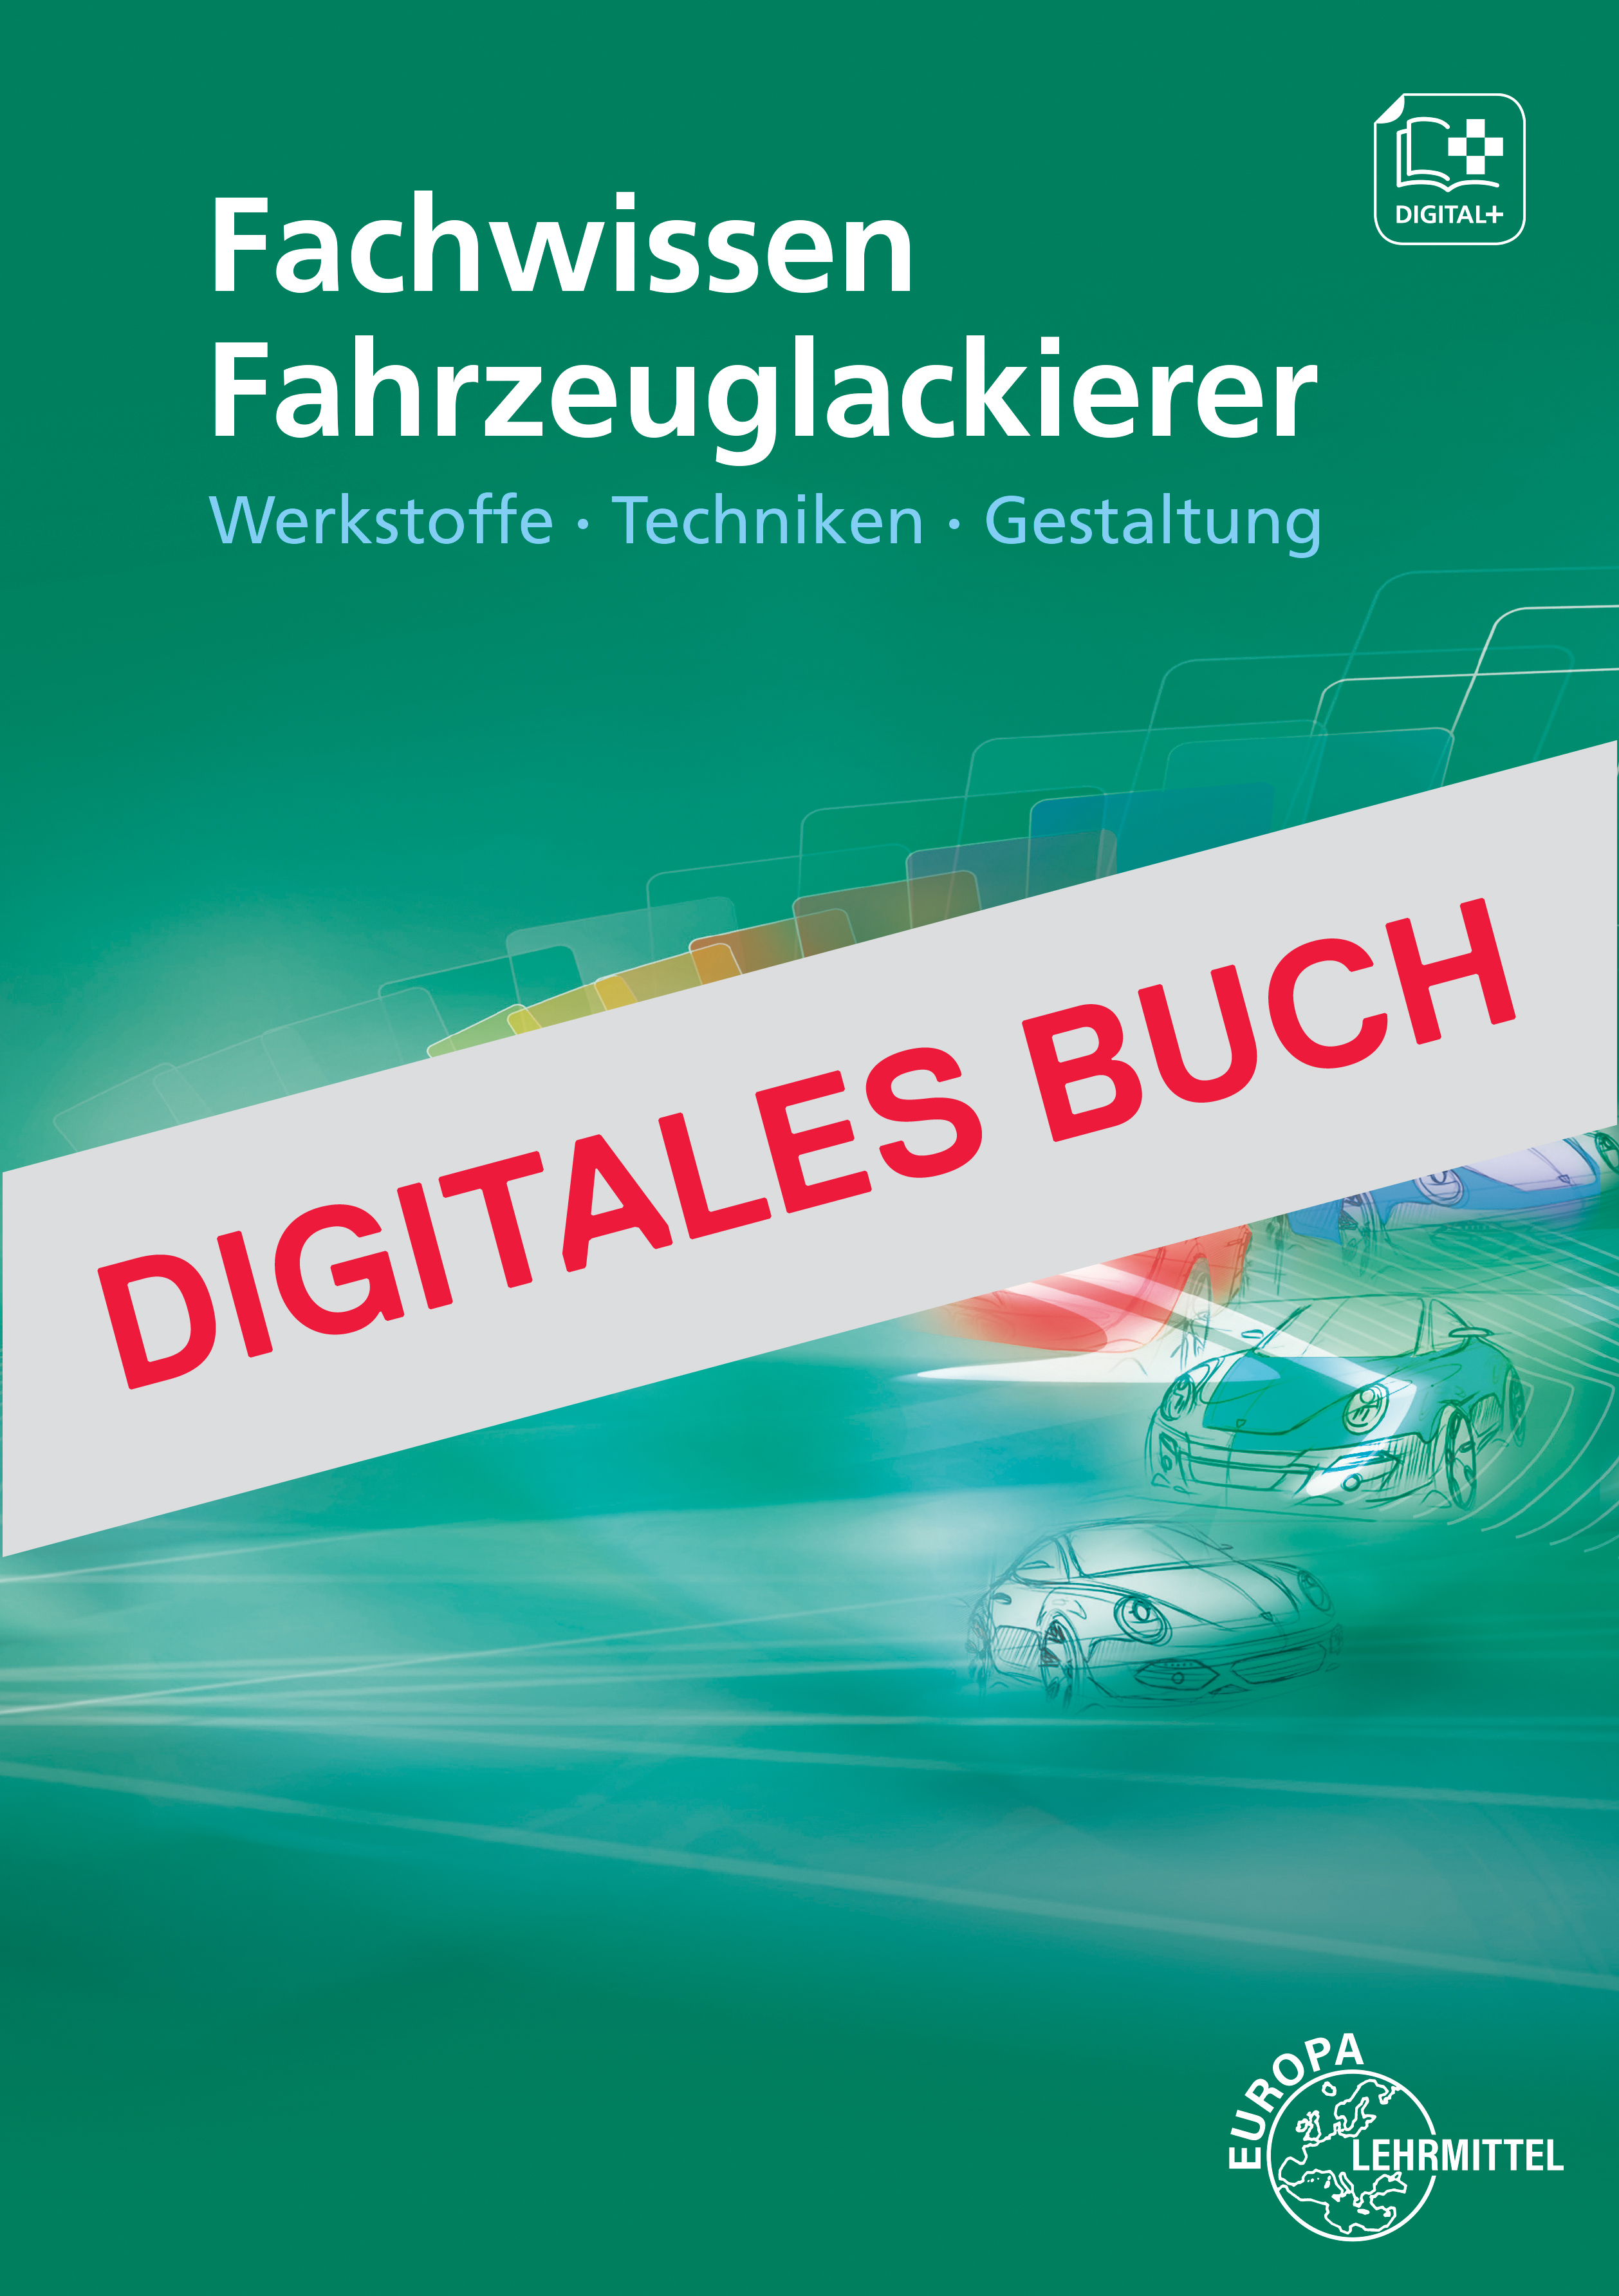 Fachwissen Fahrzeuglackierer - Werkstoffe- Techniken-Gestaltung - Digitales Buch